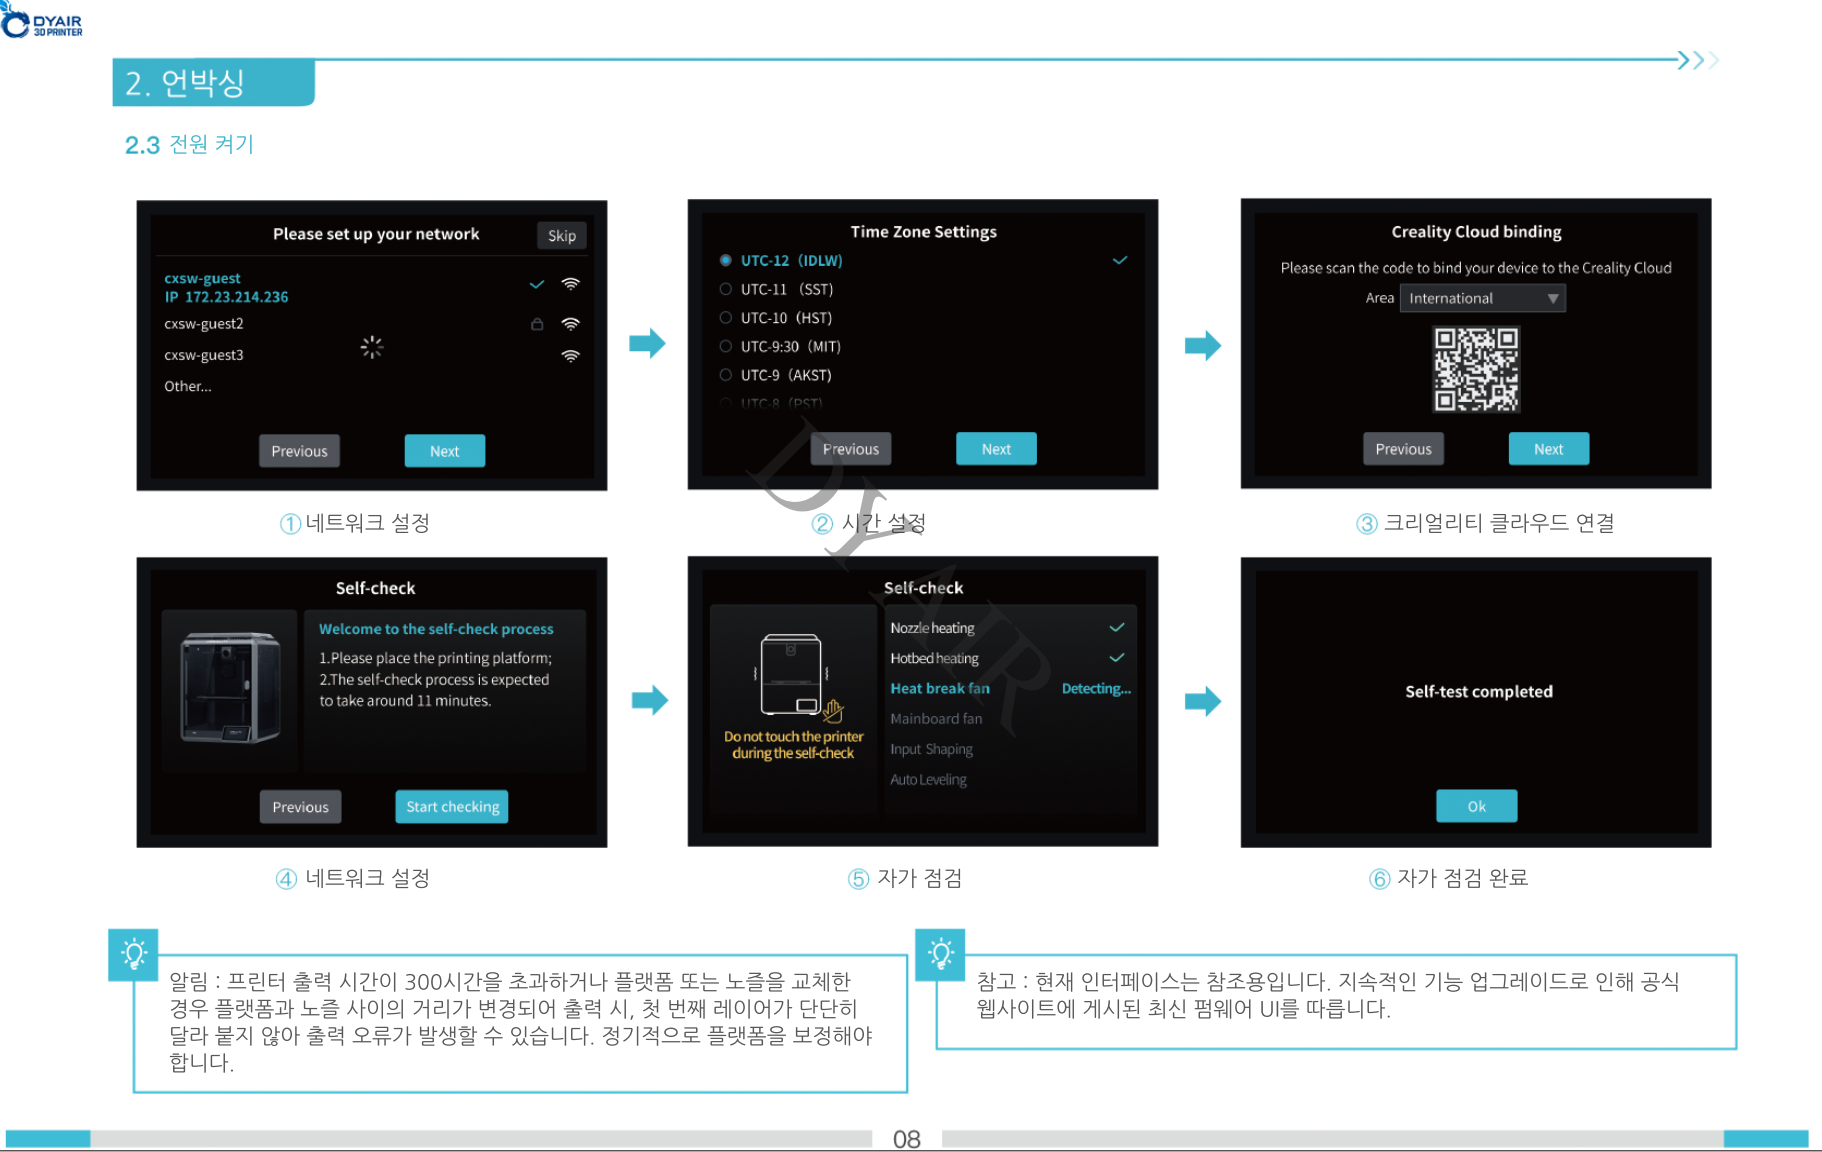 크리얼리티 K1 3D프린터 한국어 사용자 매뉴얼